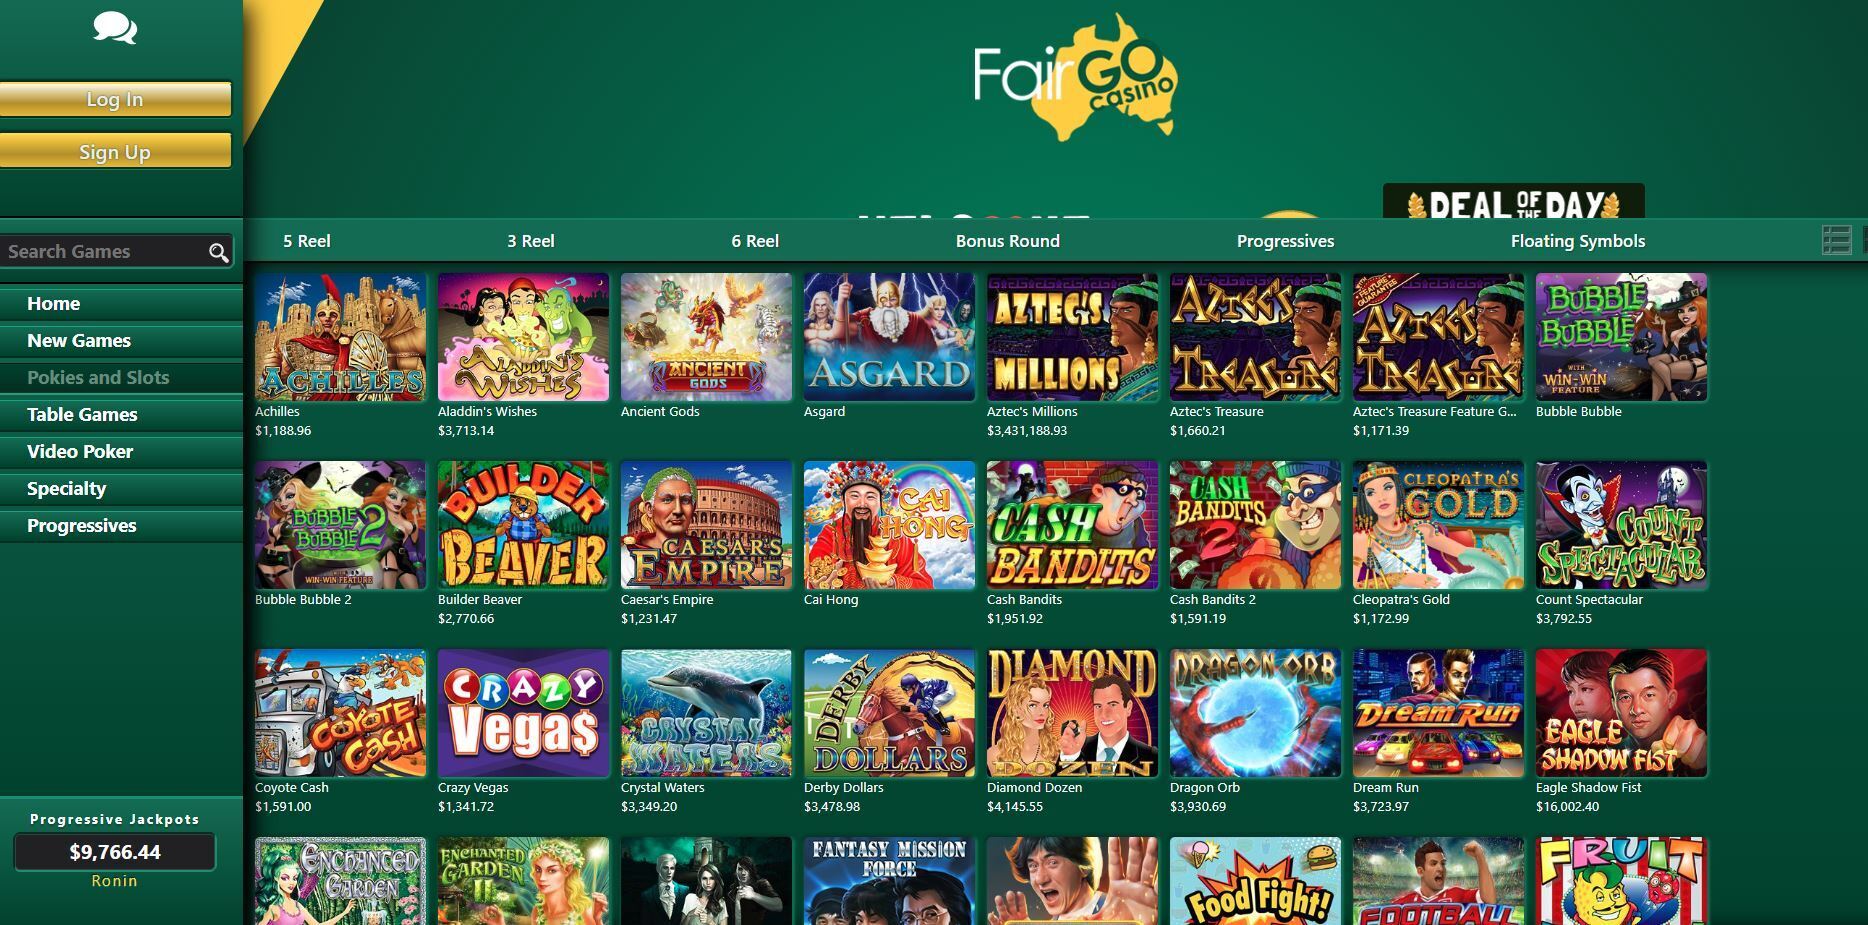 Fair Go Online Casino Pokies Games